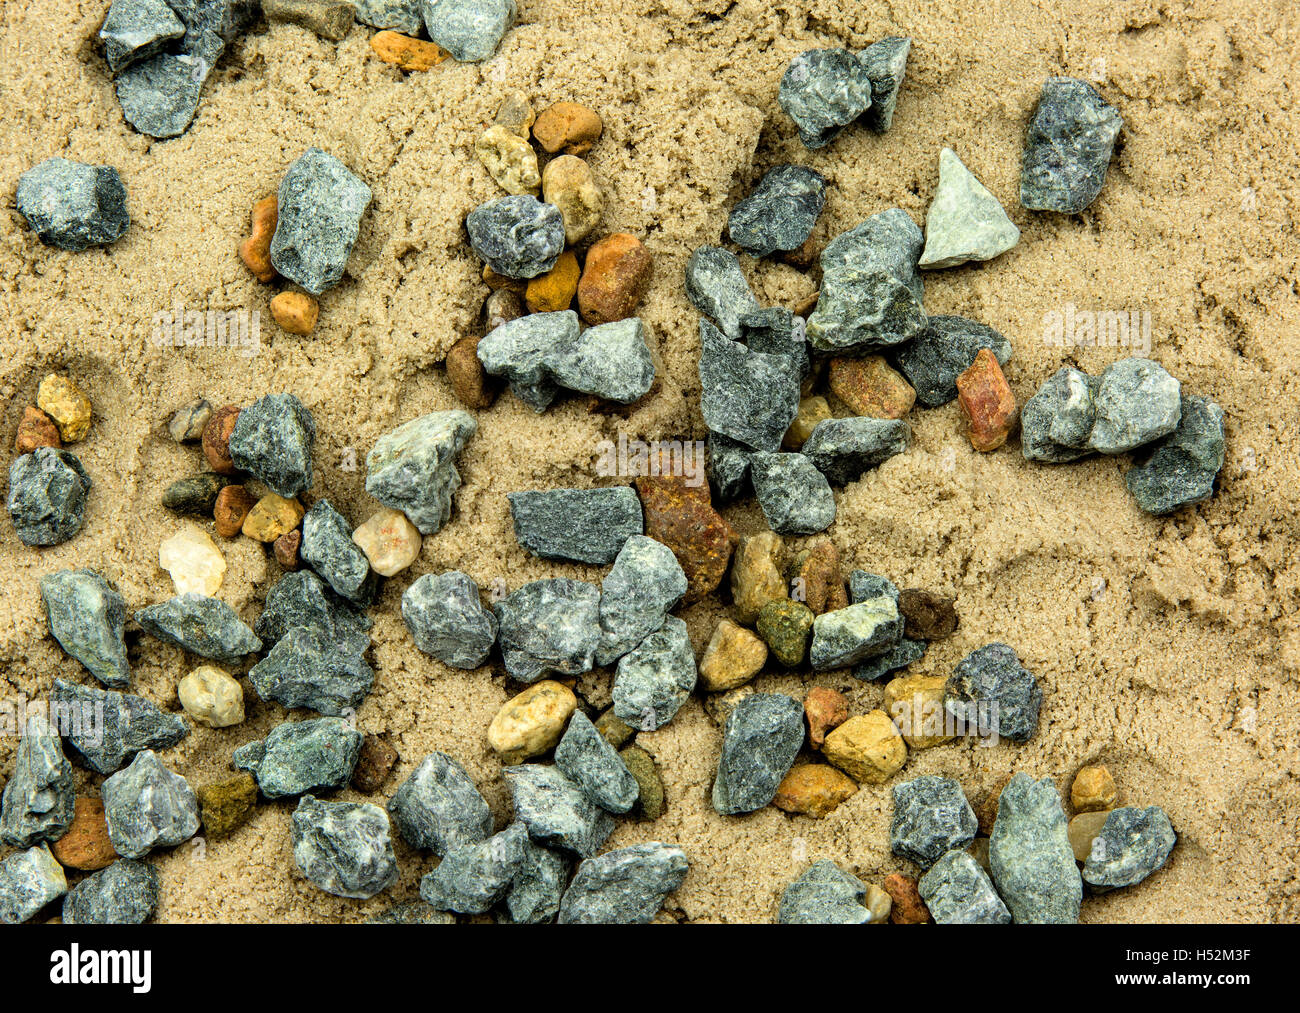 Des petits cailloux éparpillés sur le sable humide, à proximité de l'avion vue d'en haut. Intéressant et la texture de fond naturel.Horizo Banque D'Images